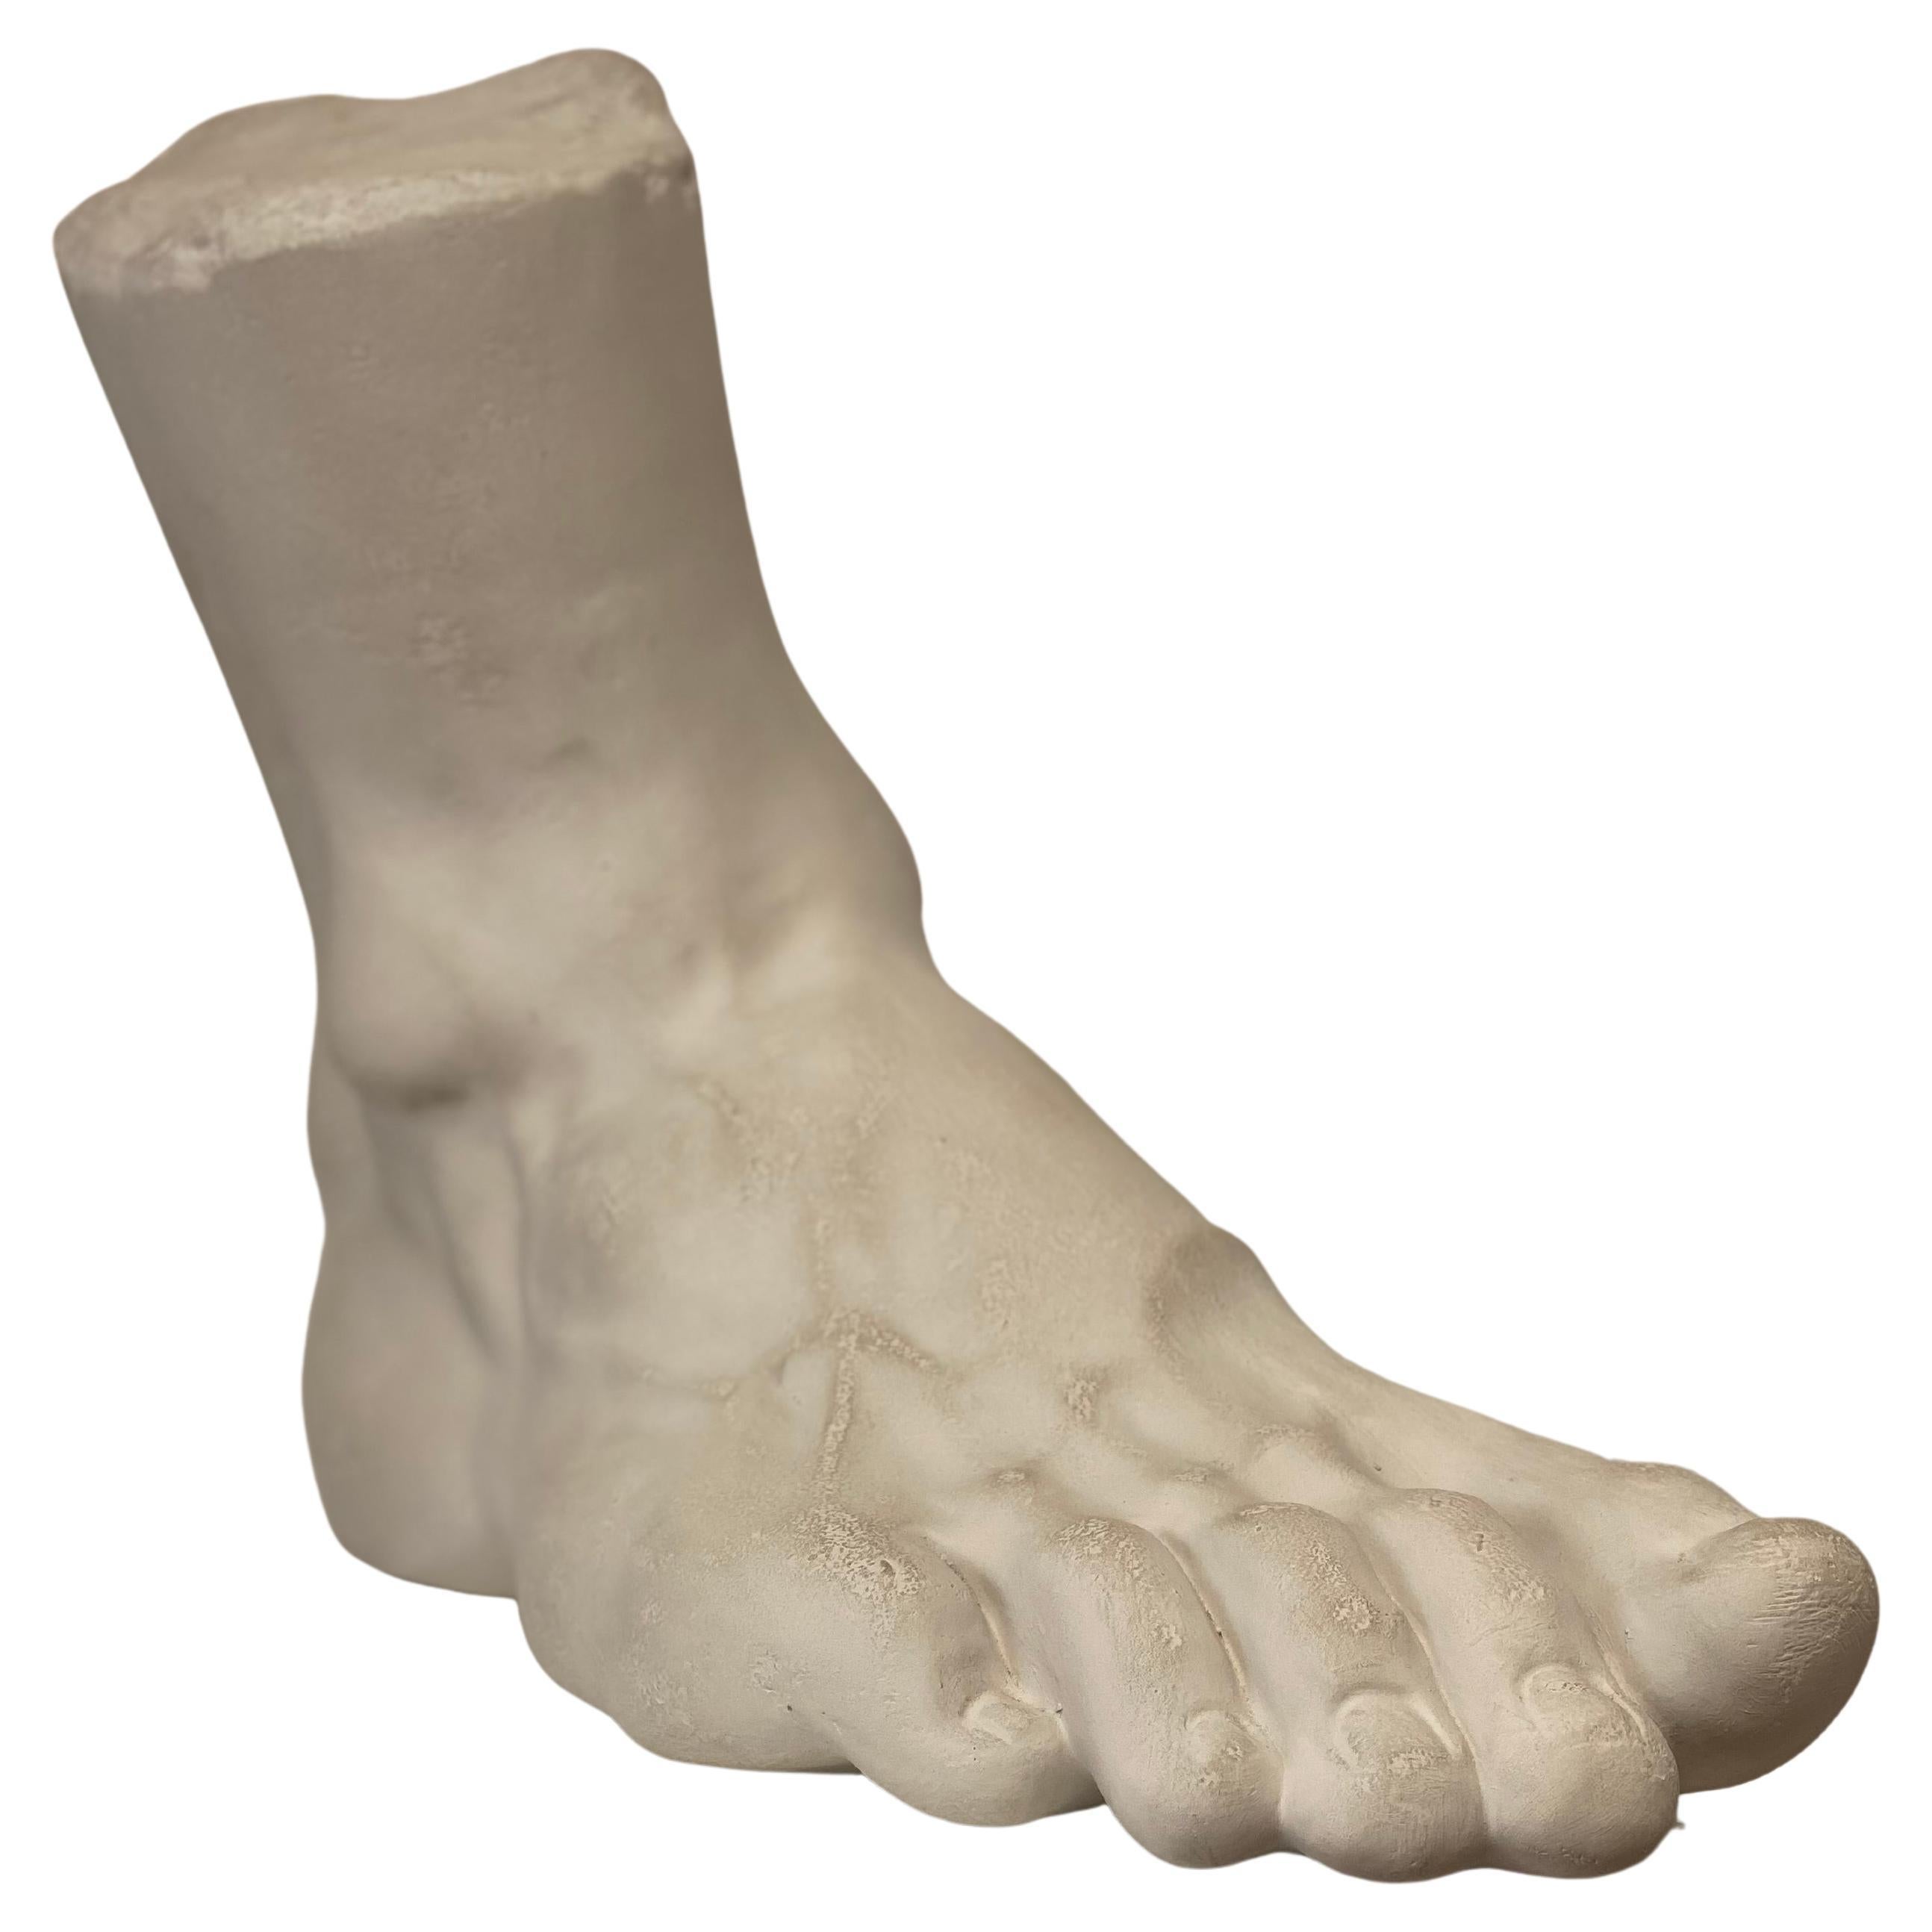 Decorative model of a Foot